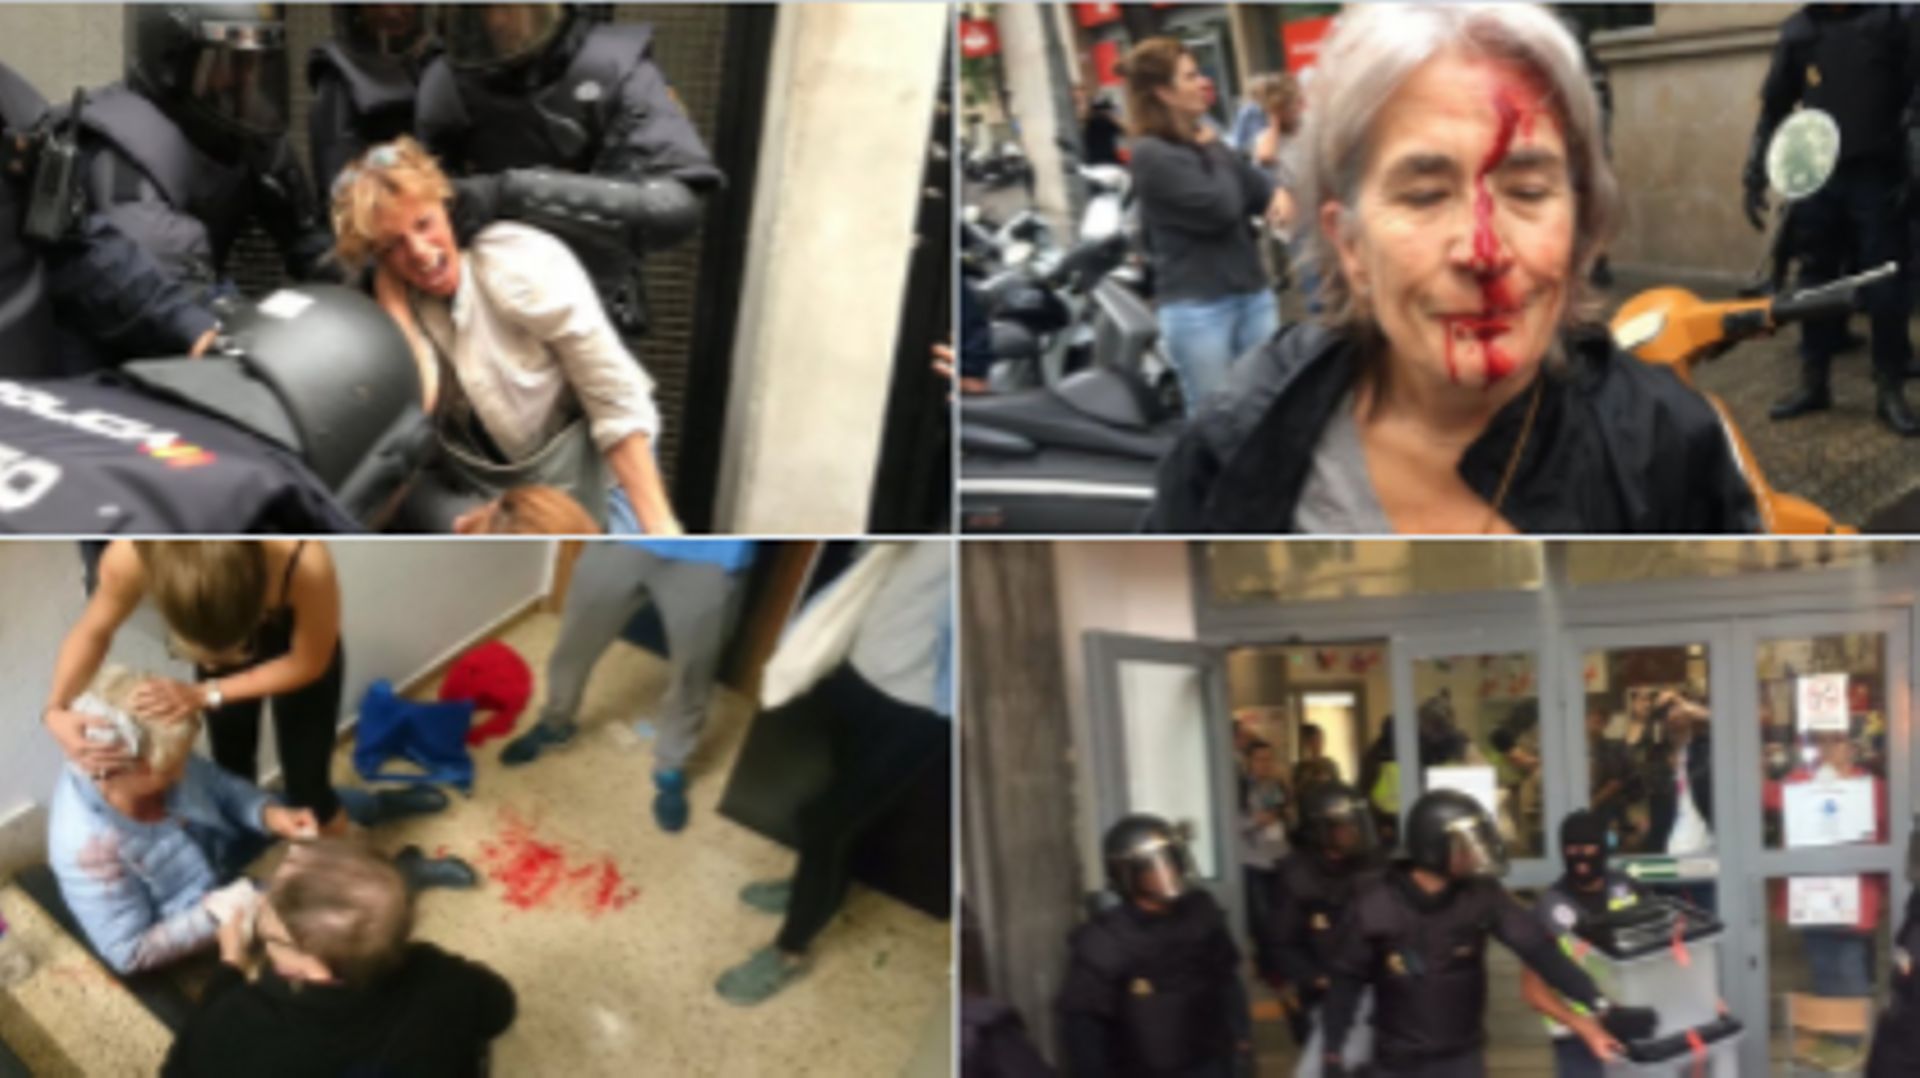 Référendum en Catalogne: plus de 300 personnes blessées par des violences policières, selon le gouvernement catalan